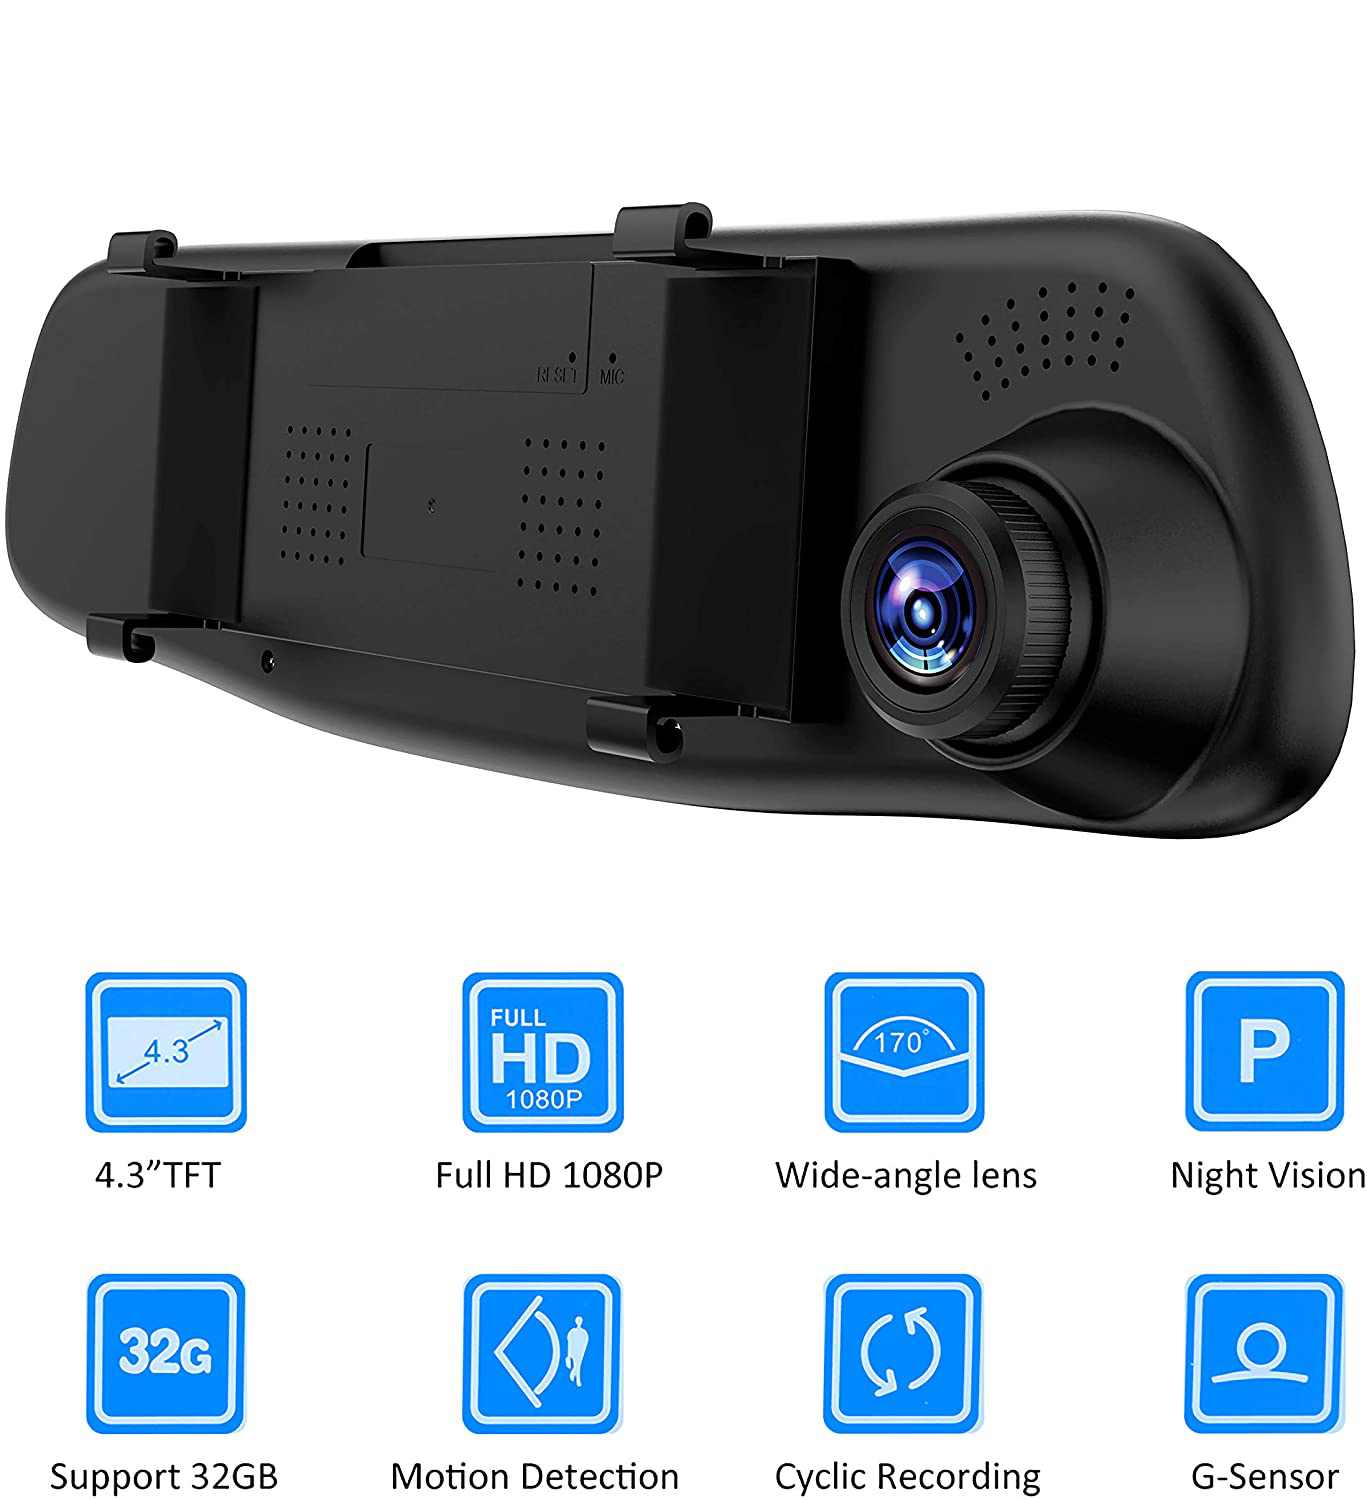 12inch voiture Dvr Streammedia rétroviseur enregistreur Dash Cam double  objectif Dashcam miroir 1080p vidéo I